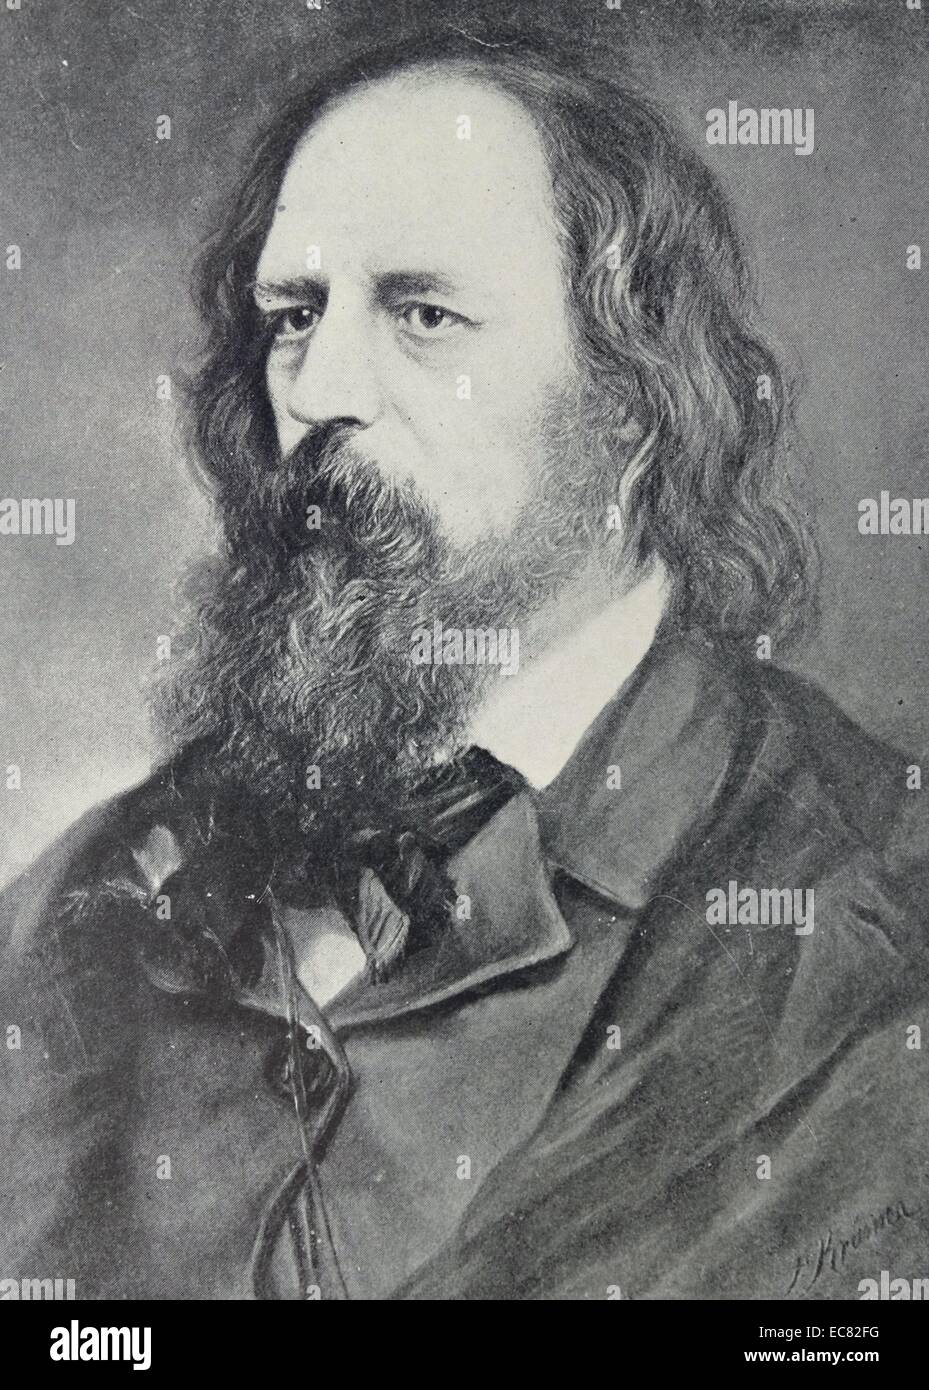 Ritratto di Alfred Tennyson (1809-1892) poeta laureato di Gran Bretagna e Irlanda durante gran parte della regina Victoria del Regno e rimane uno dei più famosi poeti inglesi. Datata 1862 Foto Stock